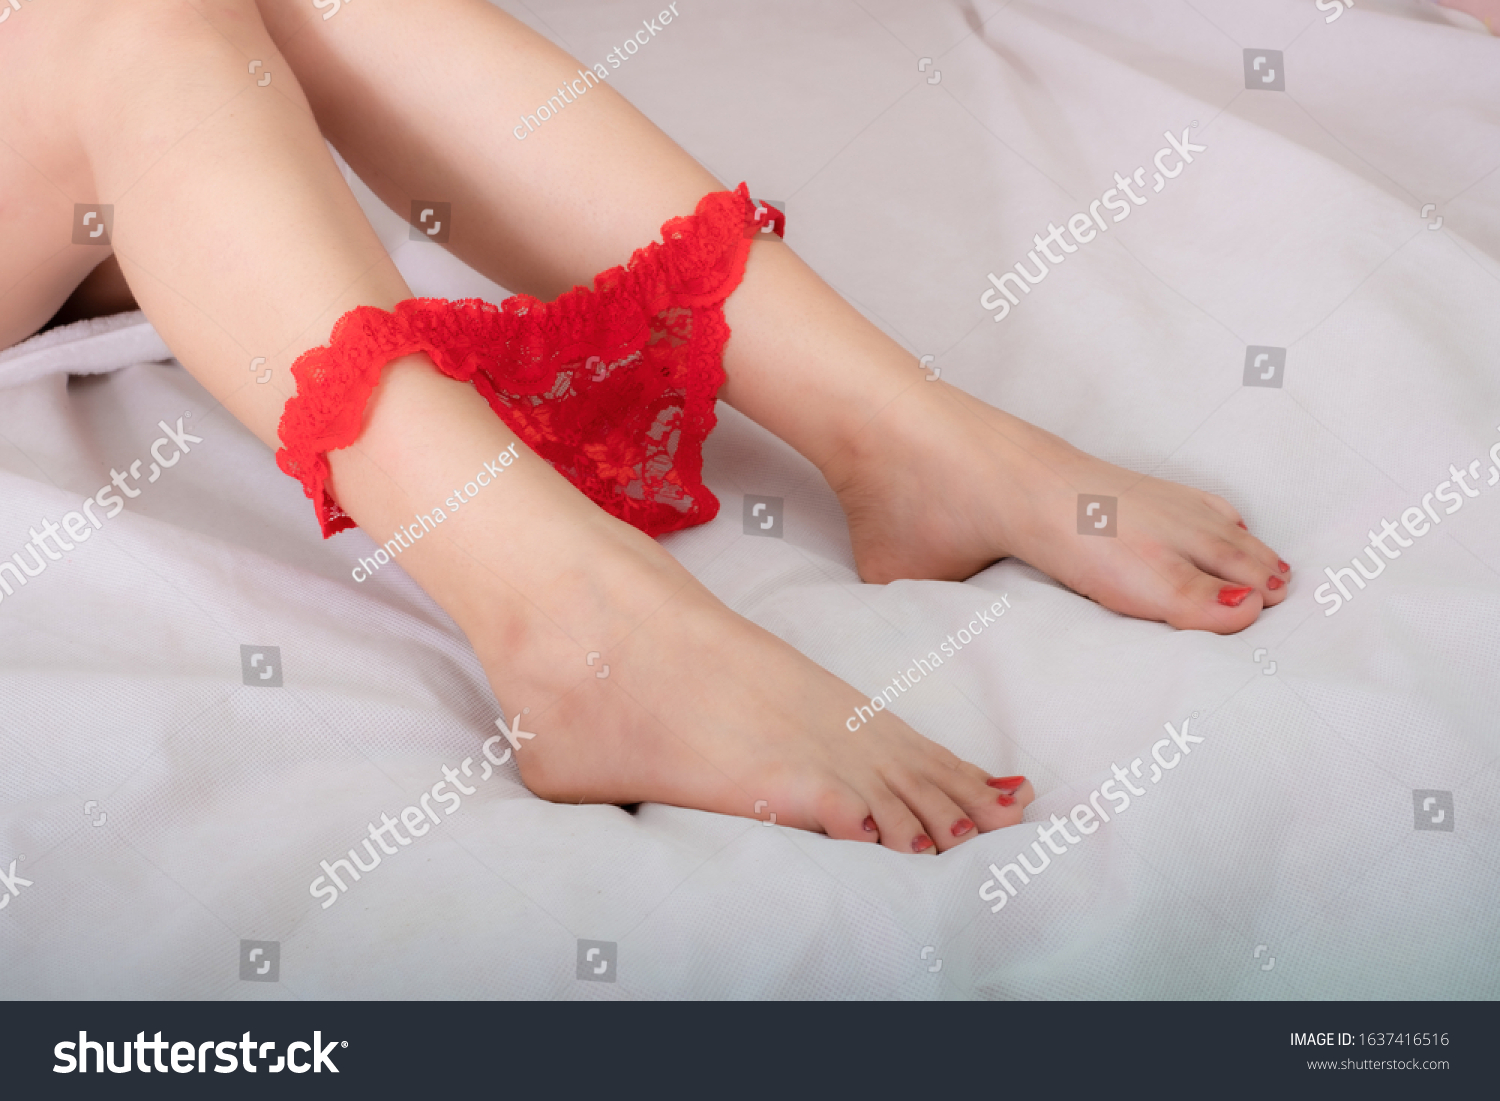 Sexy Leg Photos